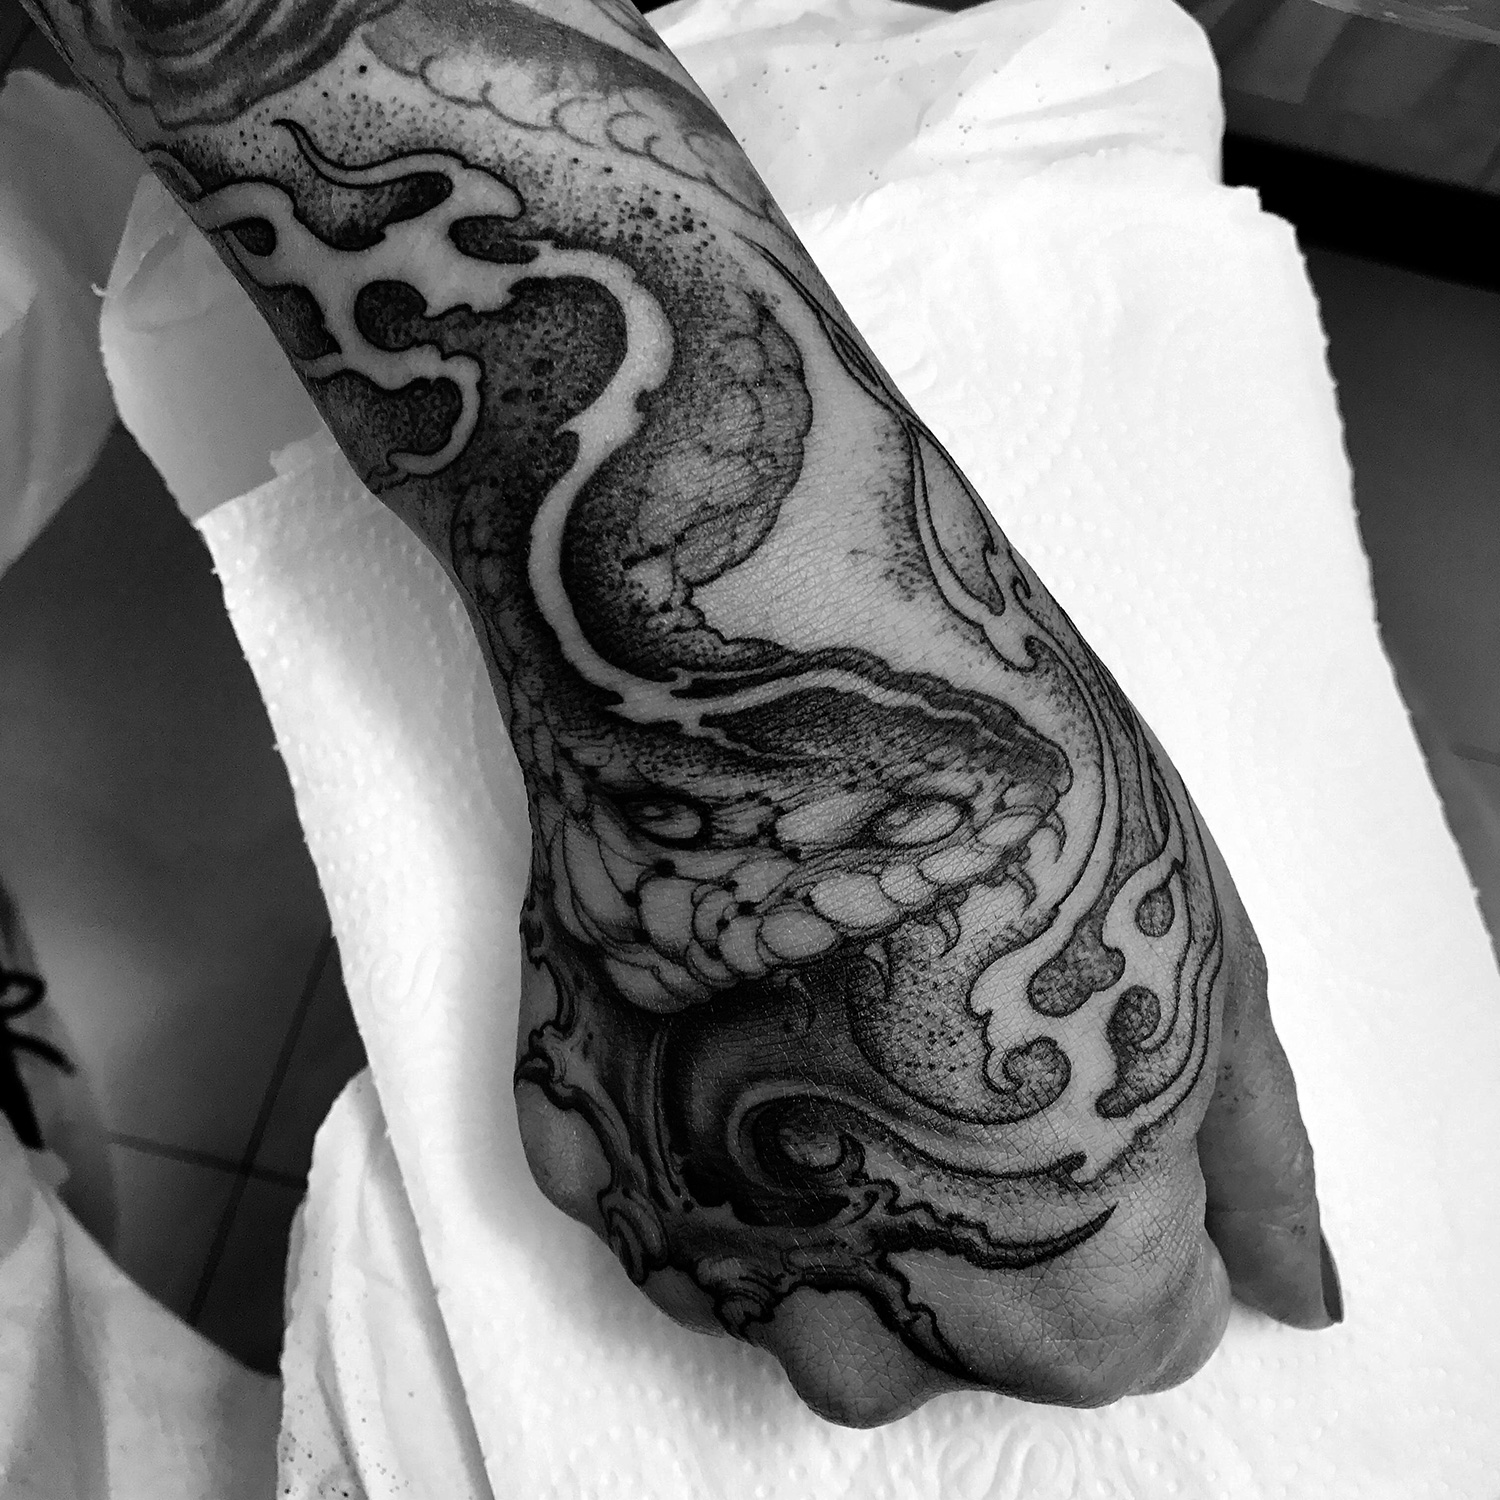 Joao Bosco - snake tattoo on hand/wrist